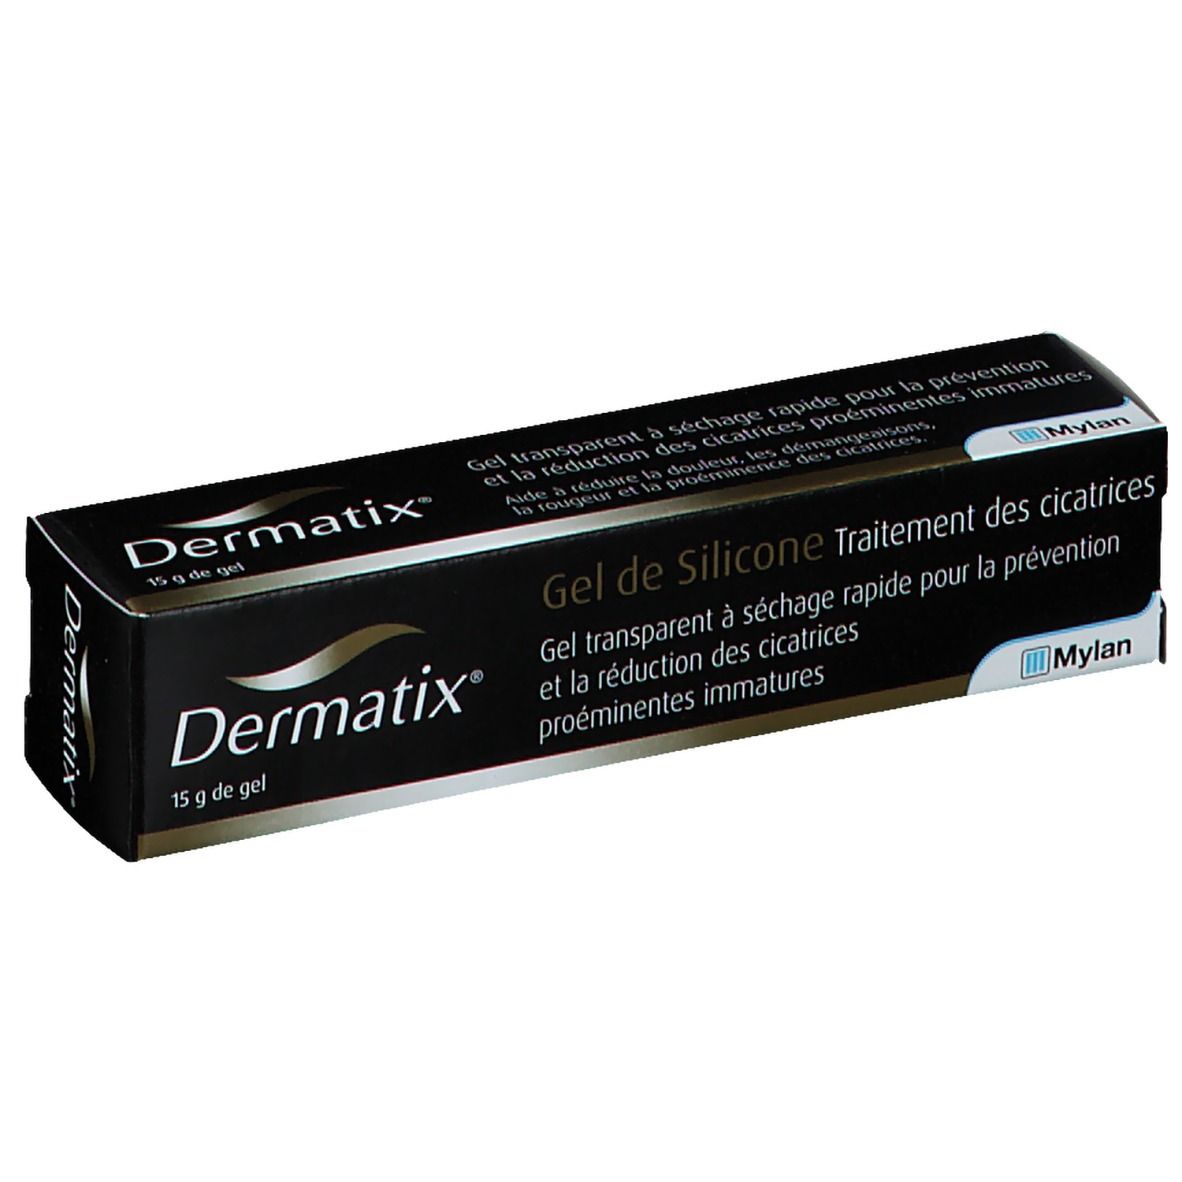 Dermatix® Gel de Silicone Traitement des cicatrices